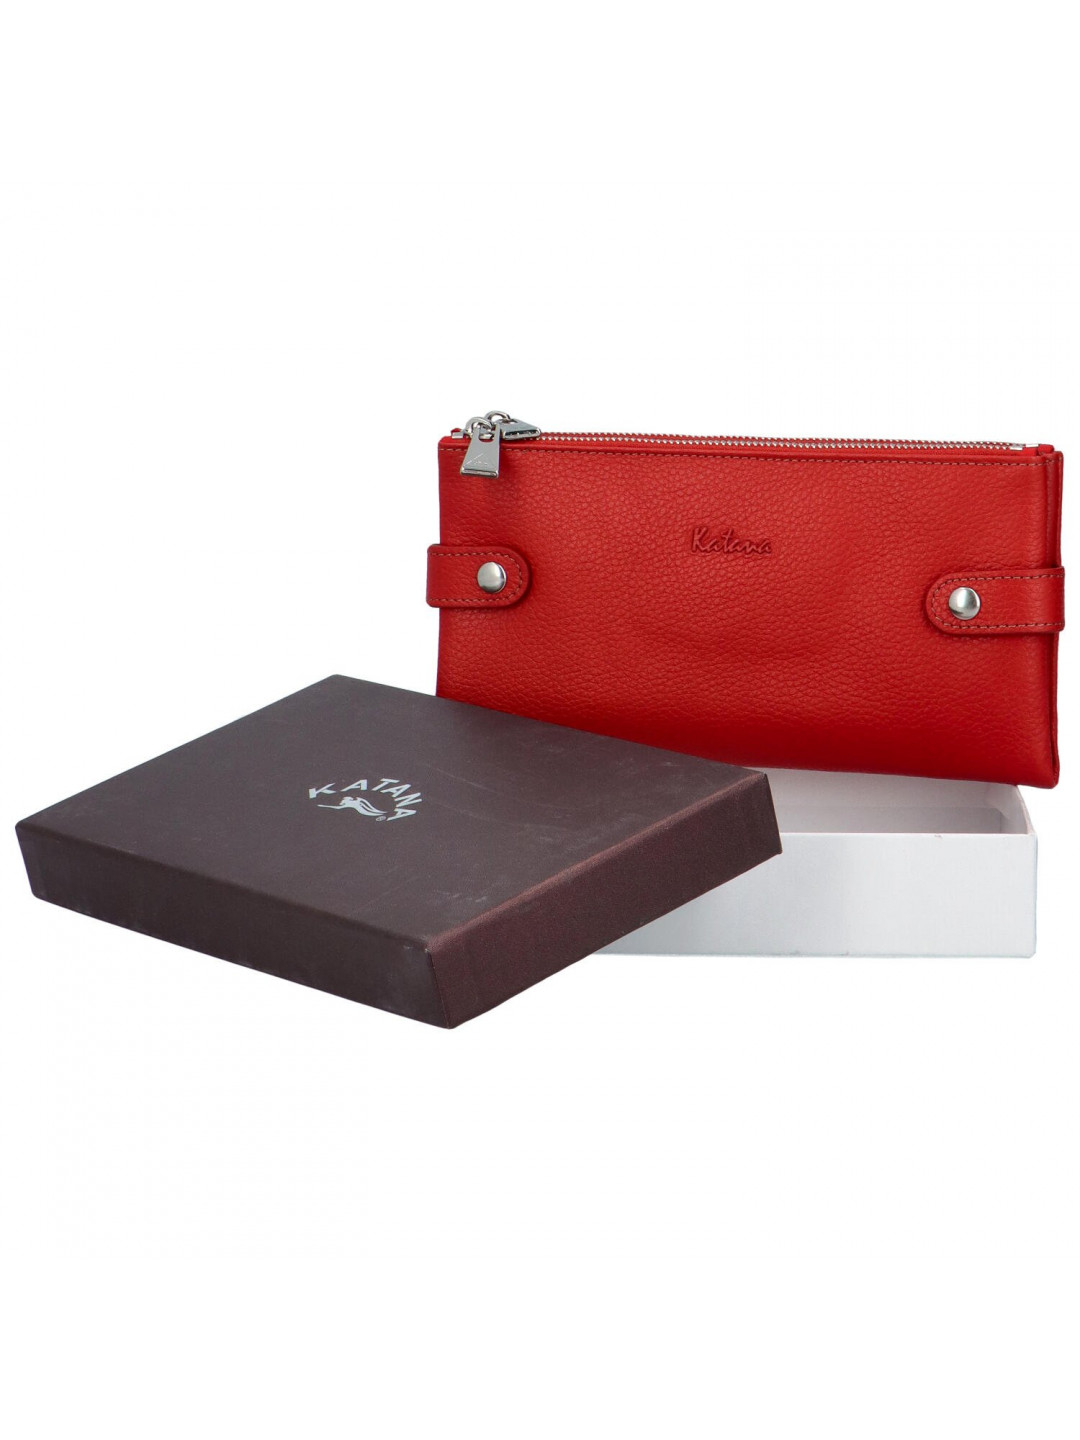 Moderní dámská kožená peněženka Sildano Katana červená